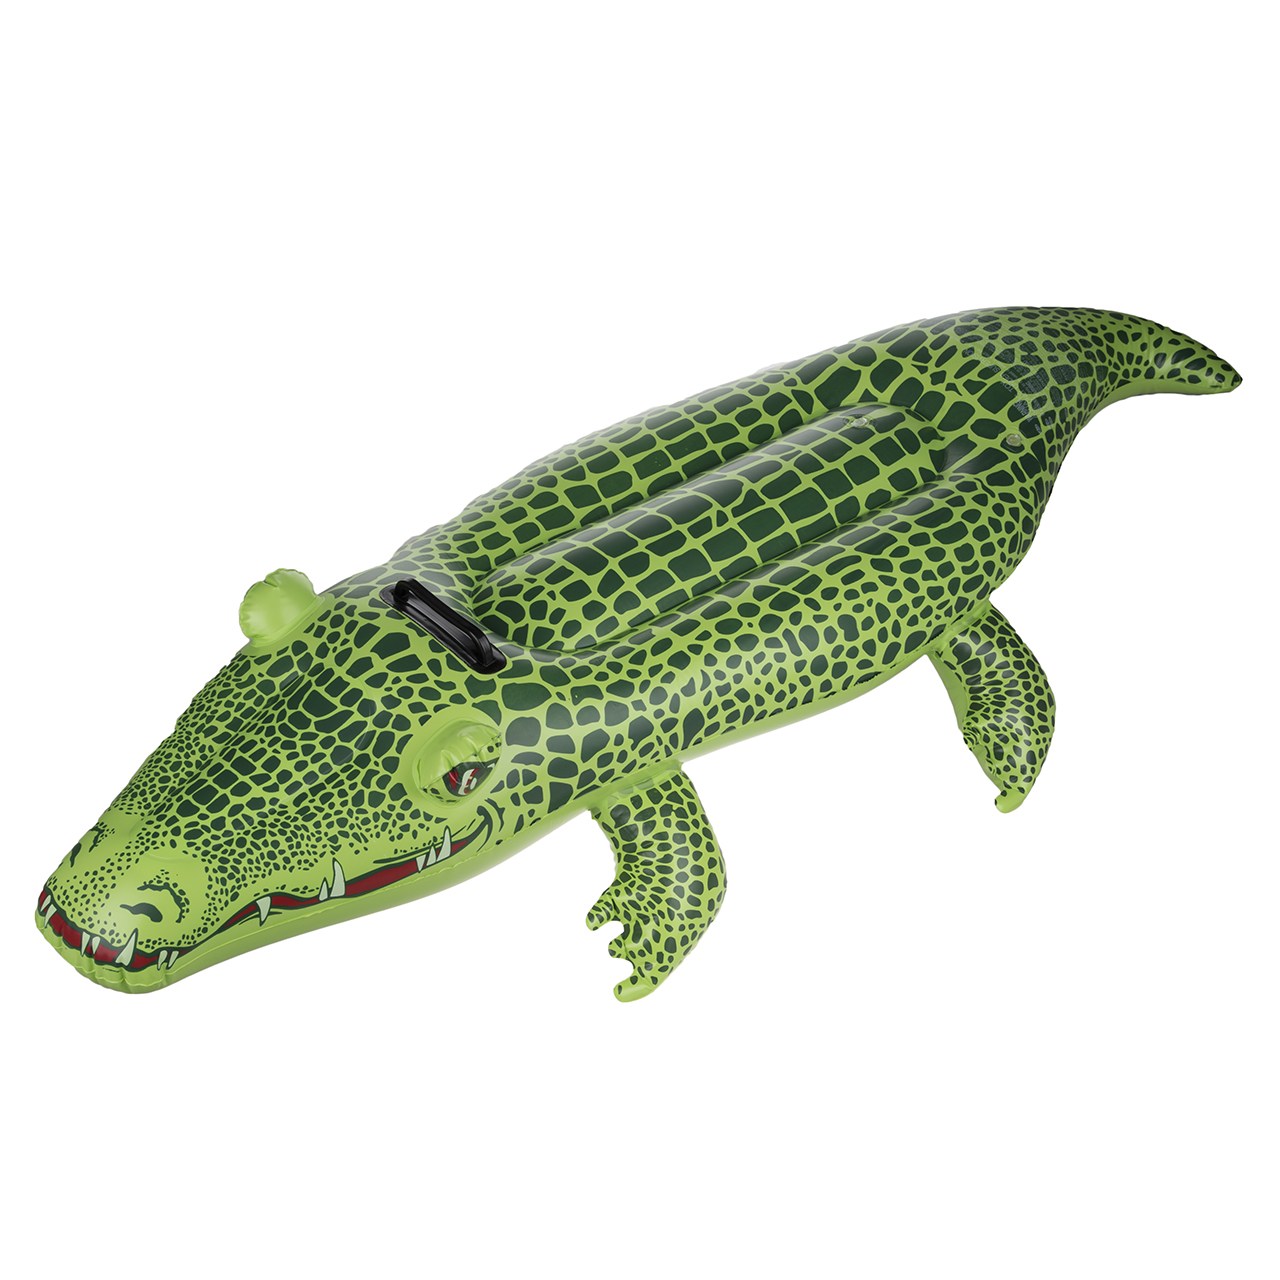 وسیله کمک آموزشی شنای کودک جیلانگ مدل Crocodile Rider